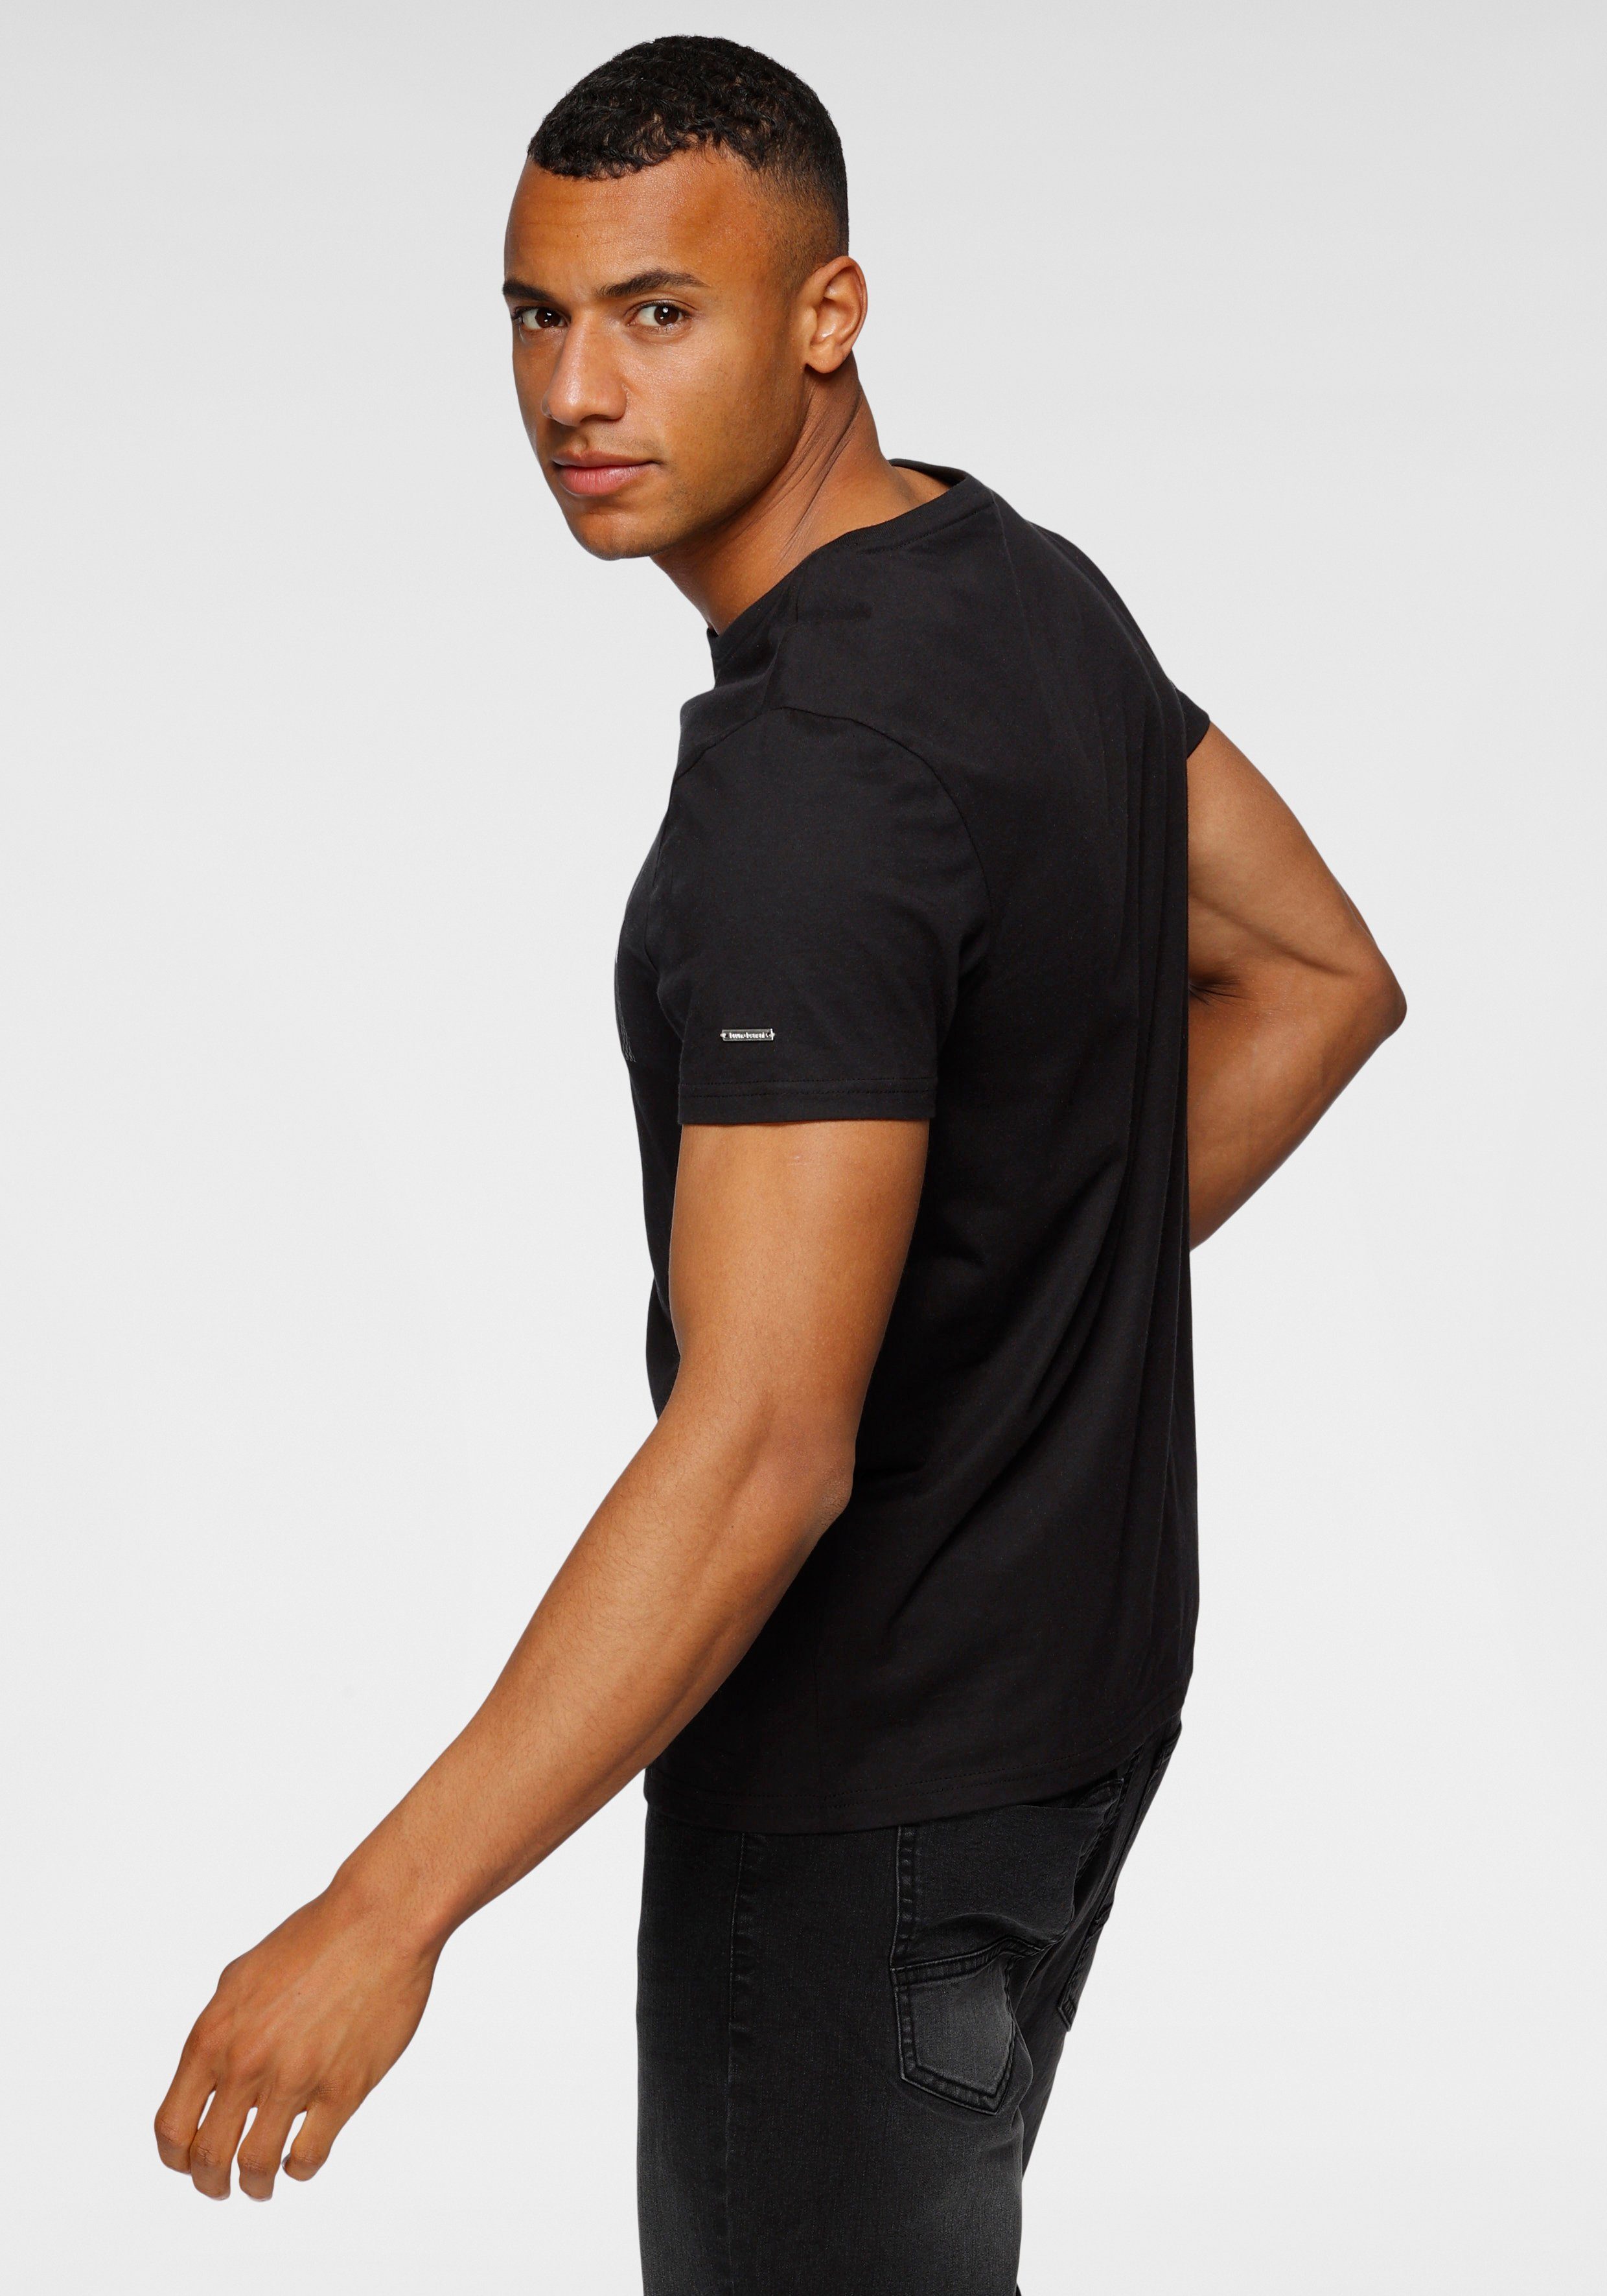 Bruno T-Shirt glänzendem schwarz Print mit Banani